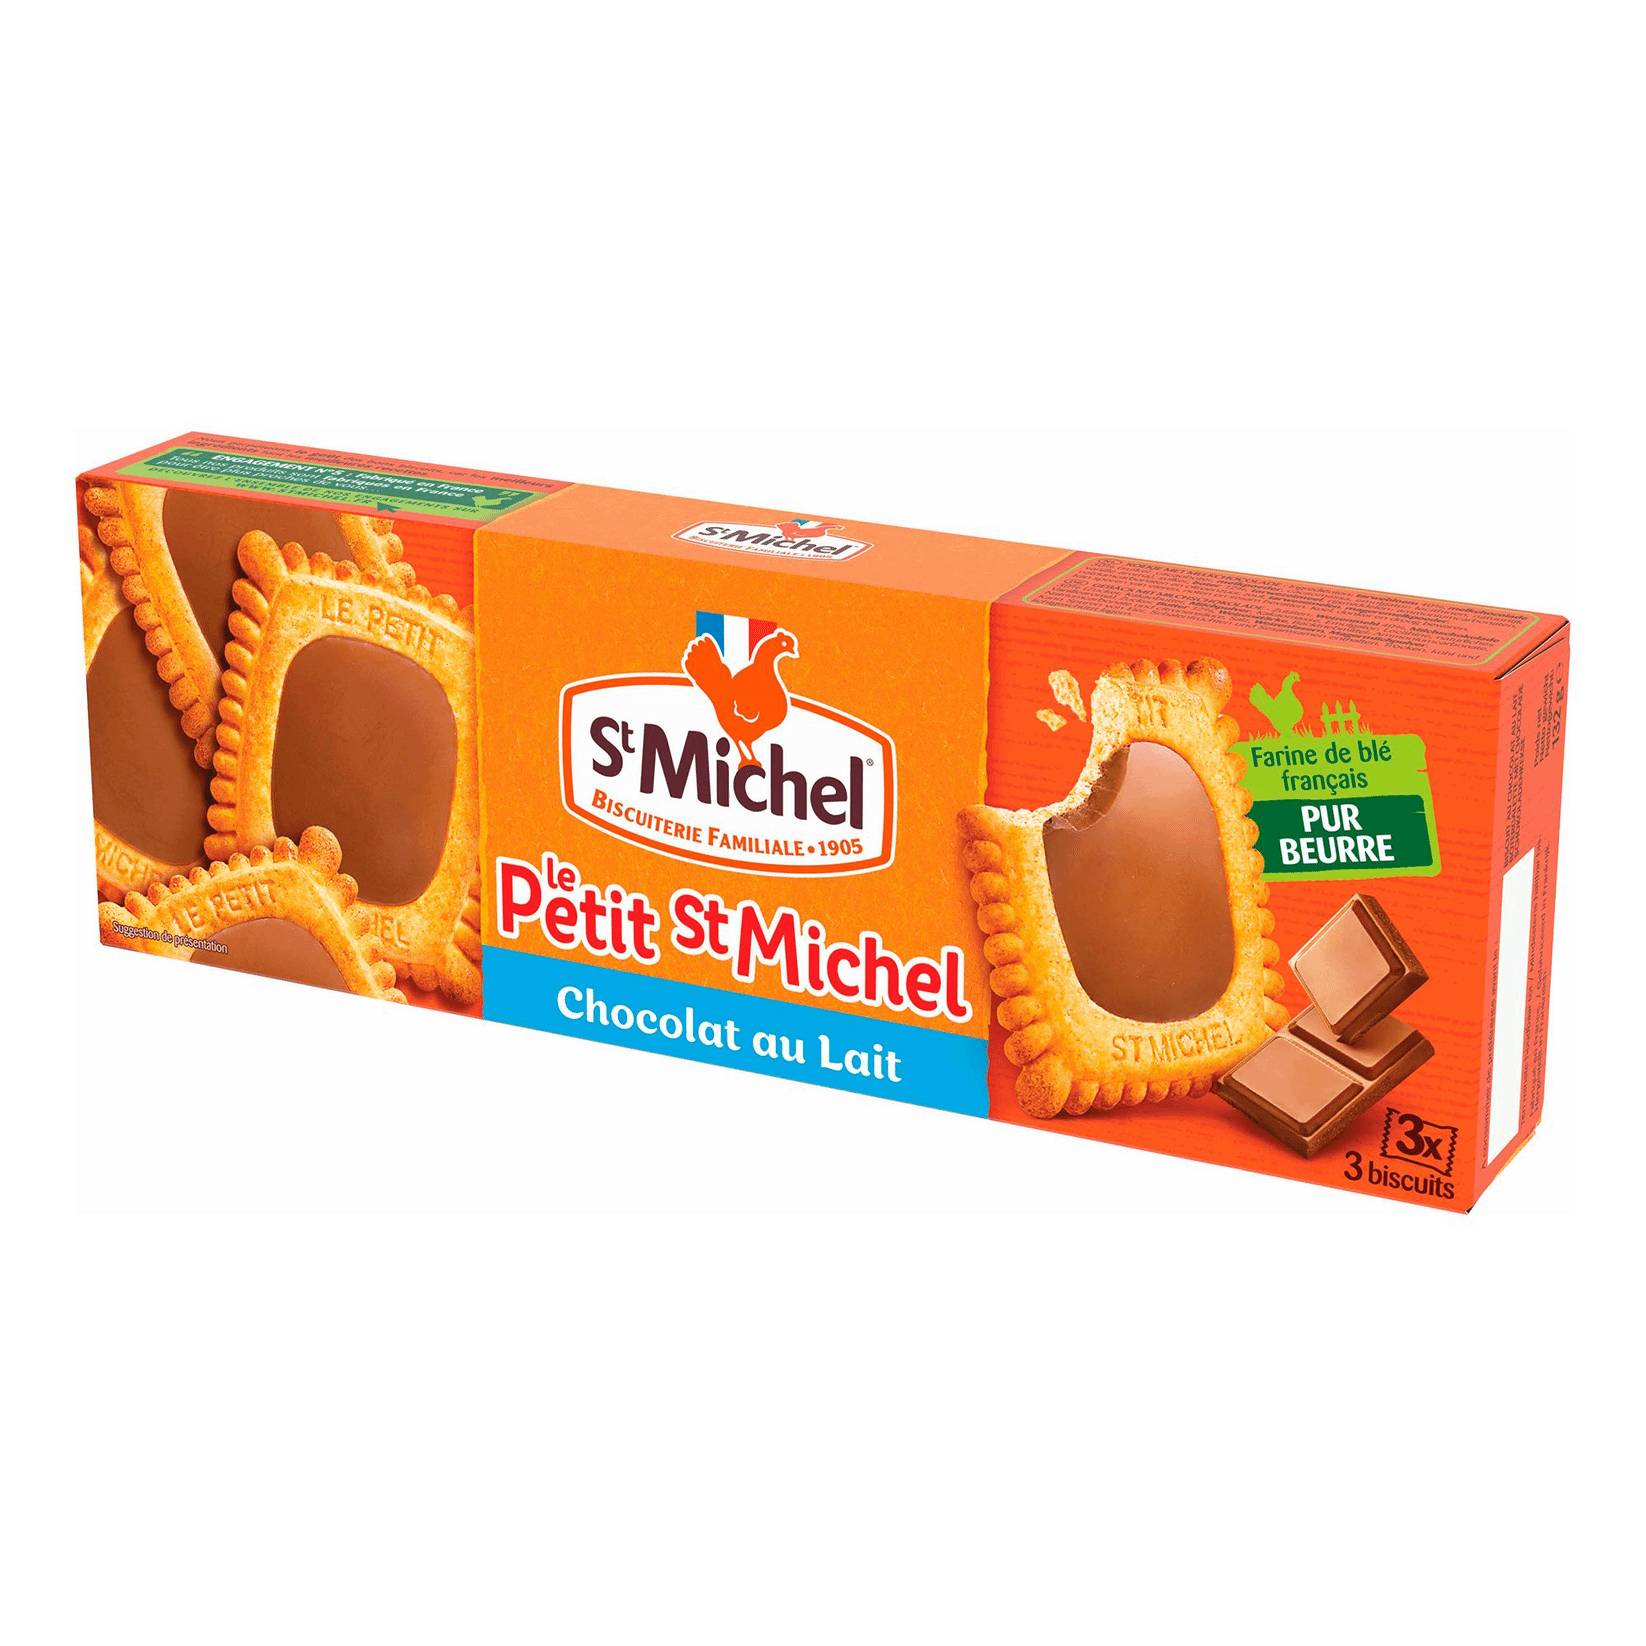 Печенье StMichel сливочное с шоколадом, 132 г